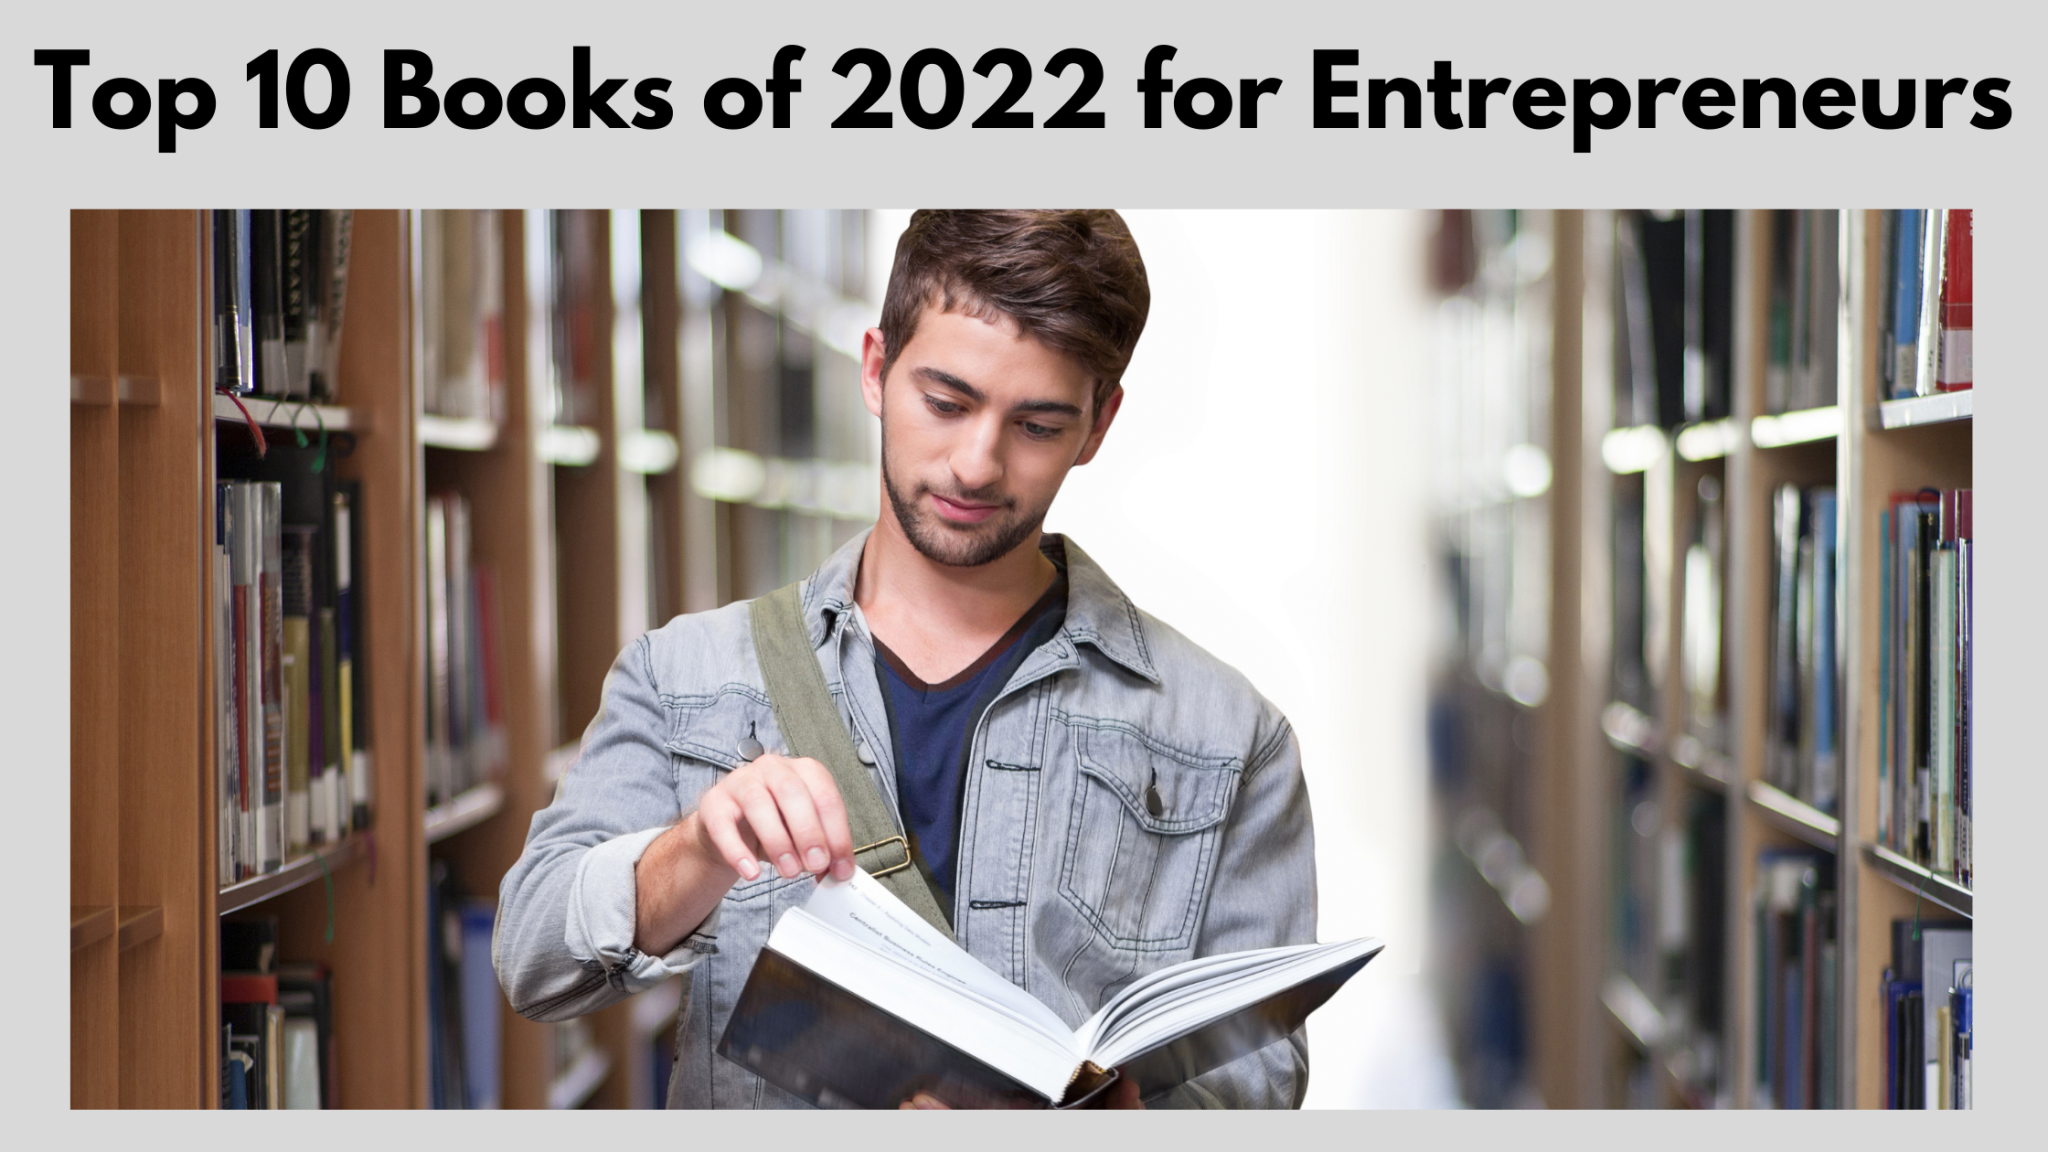 Top 10 Books of 2022 for Entrepreneurs